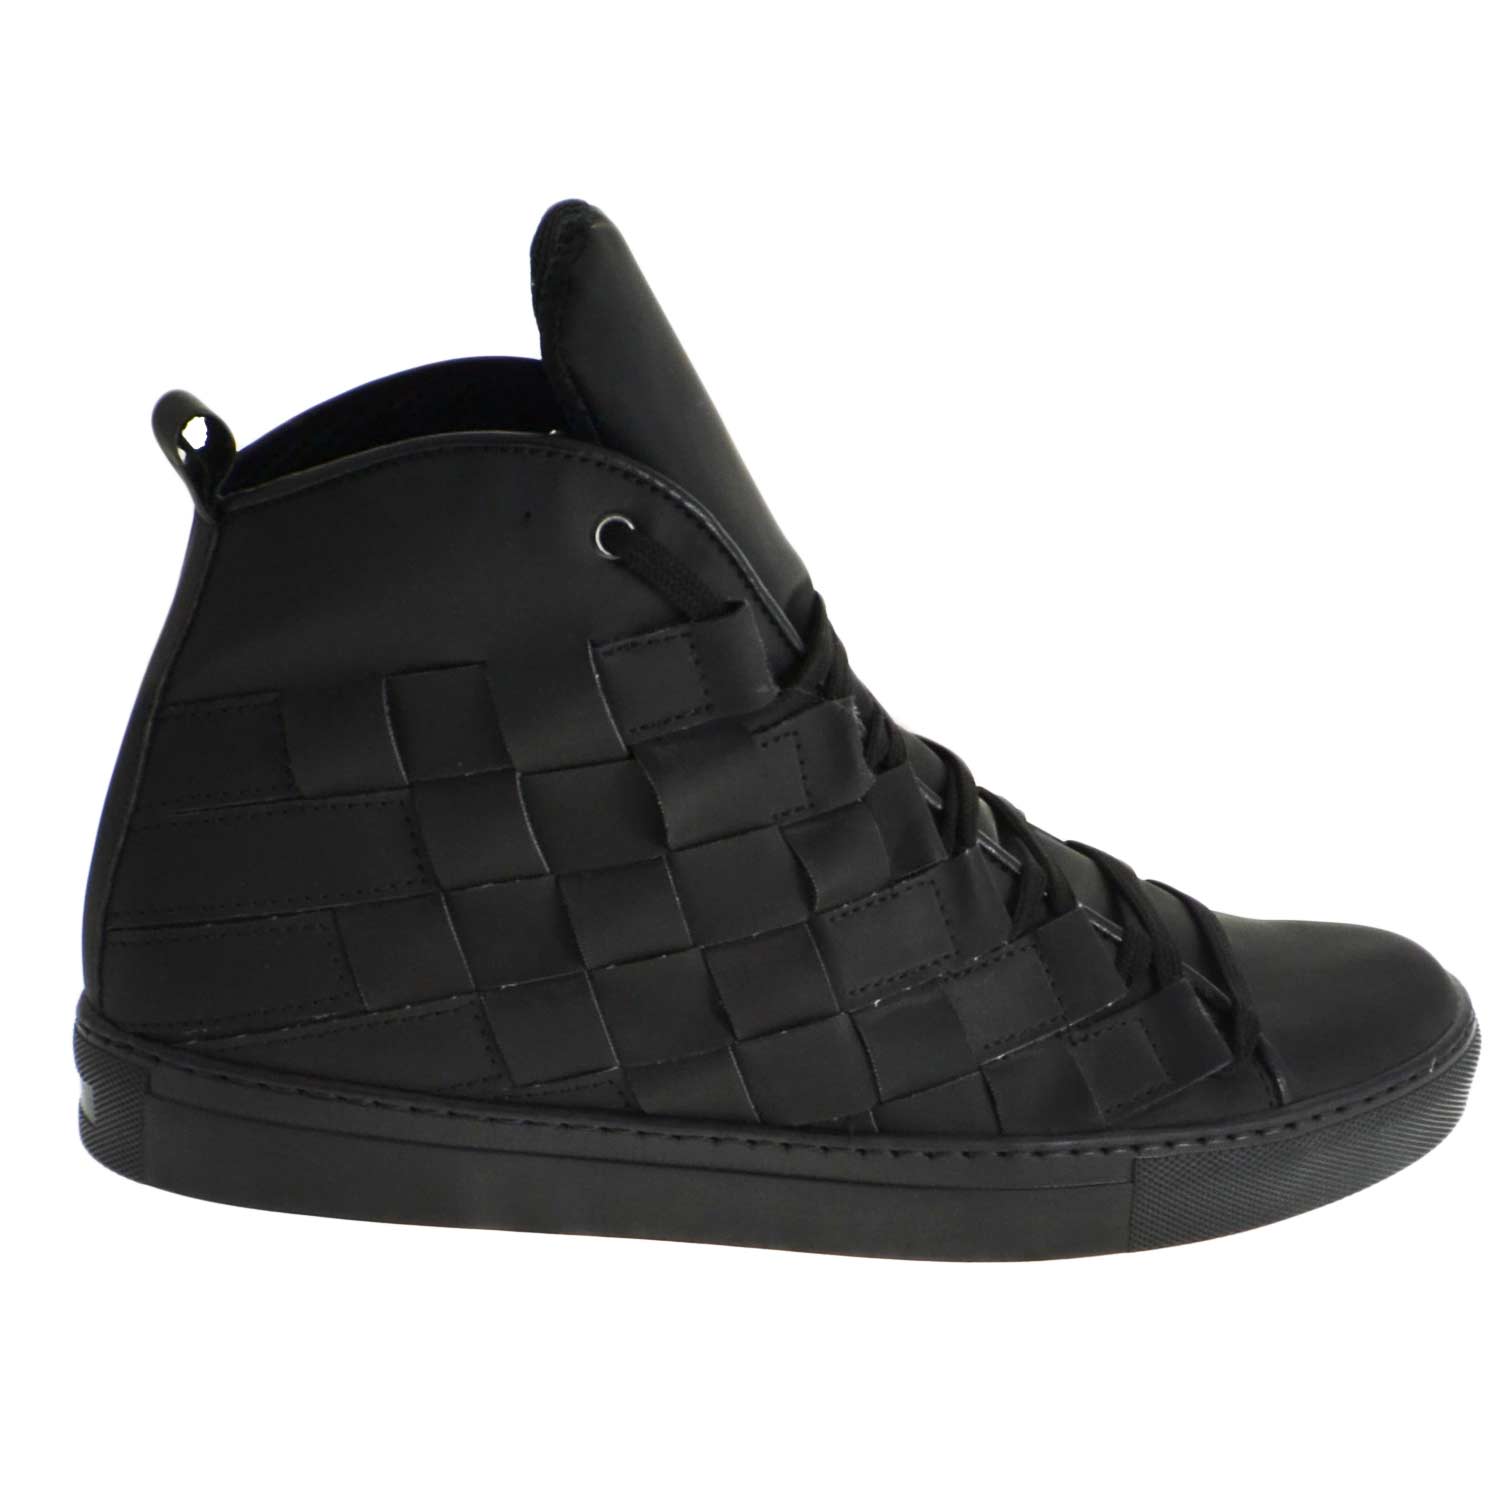 Sneakers alta art 5055 pelle gommato nero matto moda glamour intreccio a mano fondo antiscivolo